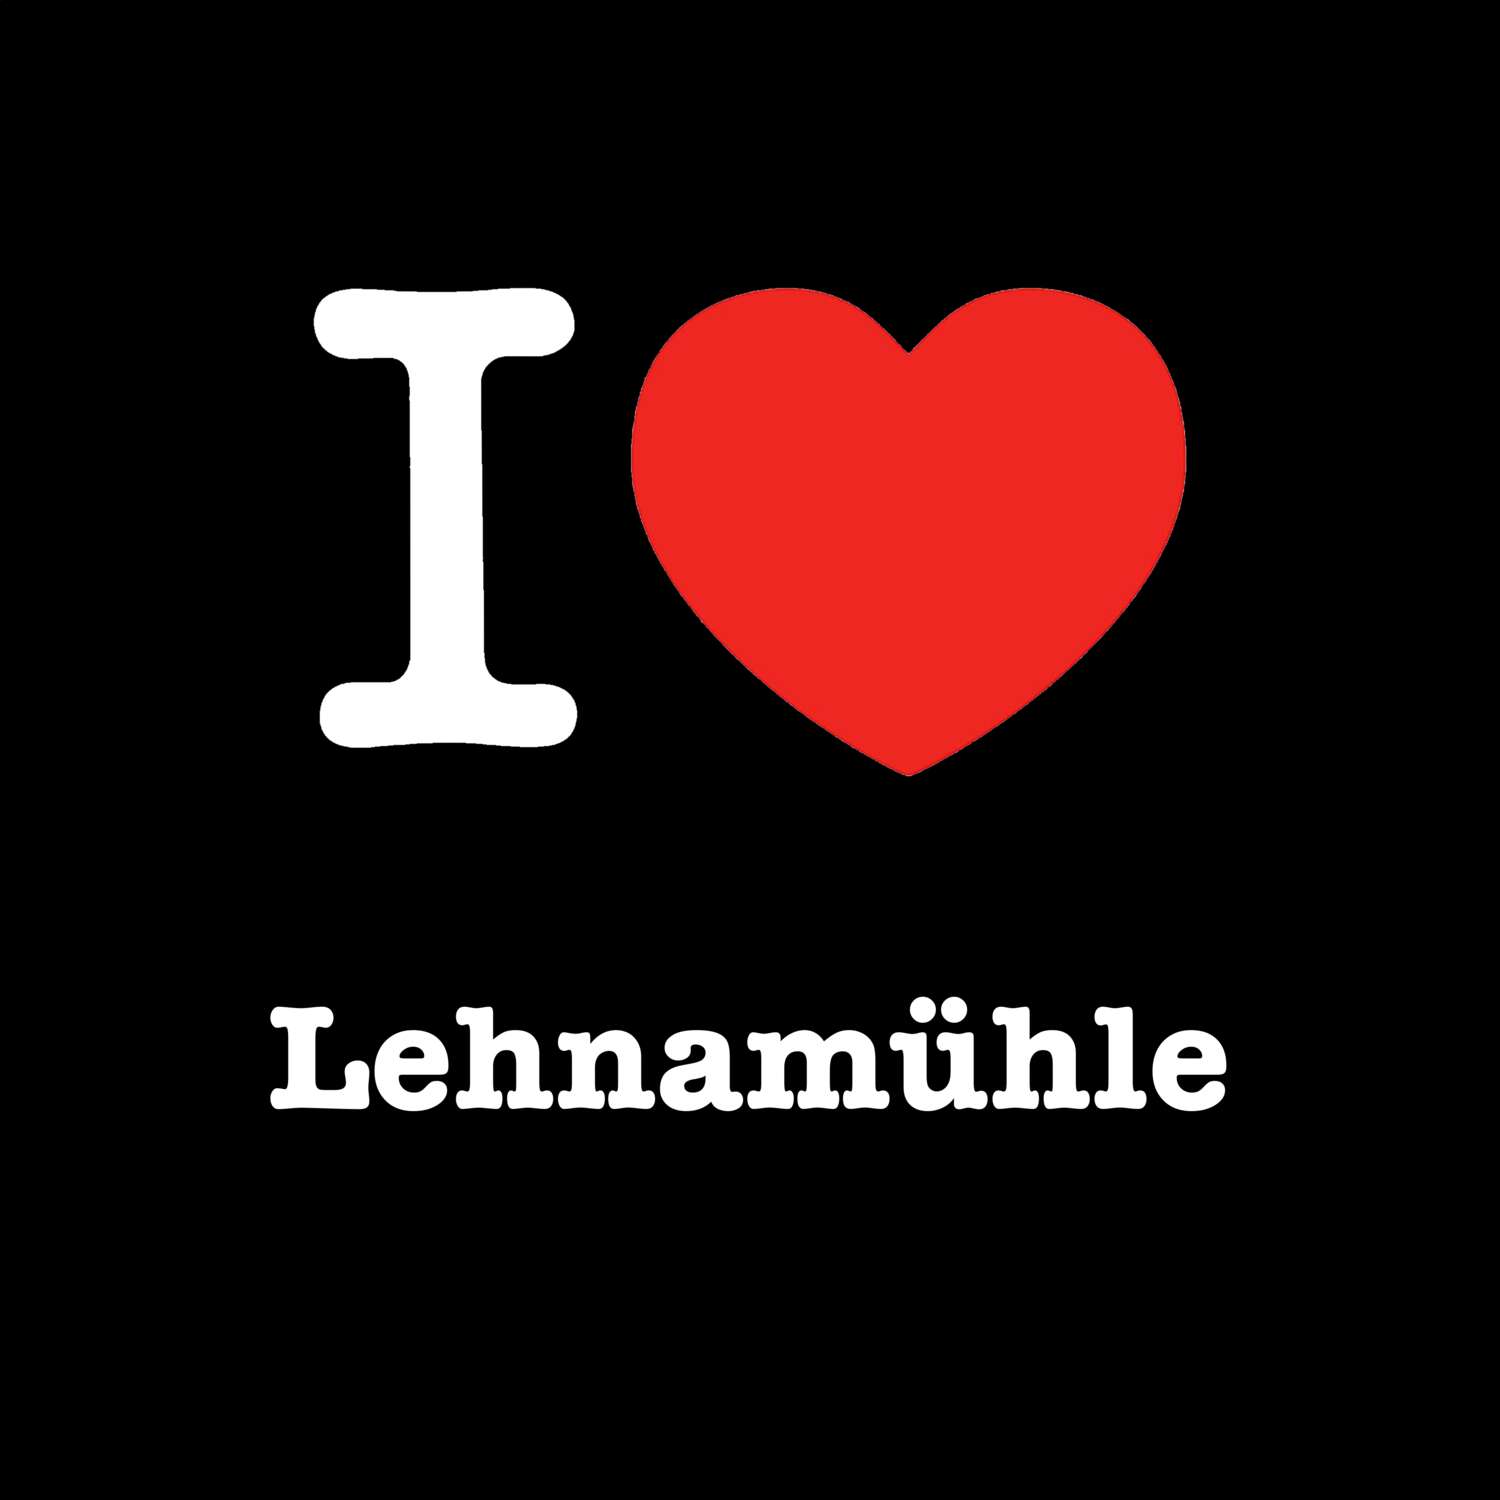 Lehnamühle T-Shirt »I love«